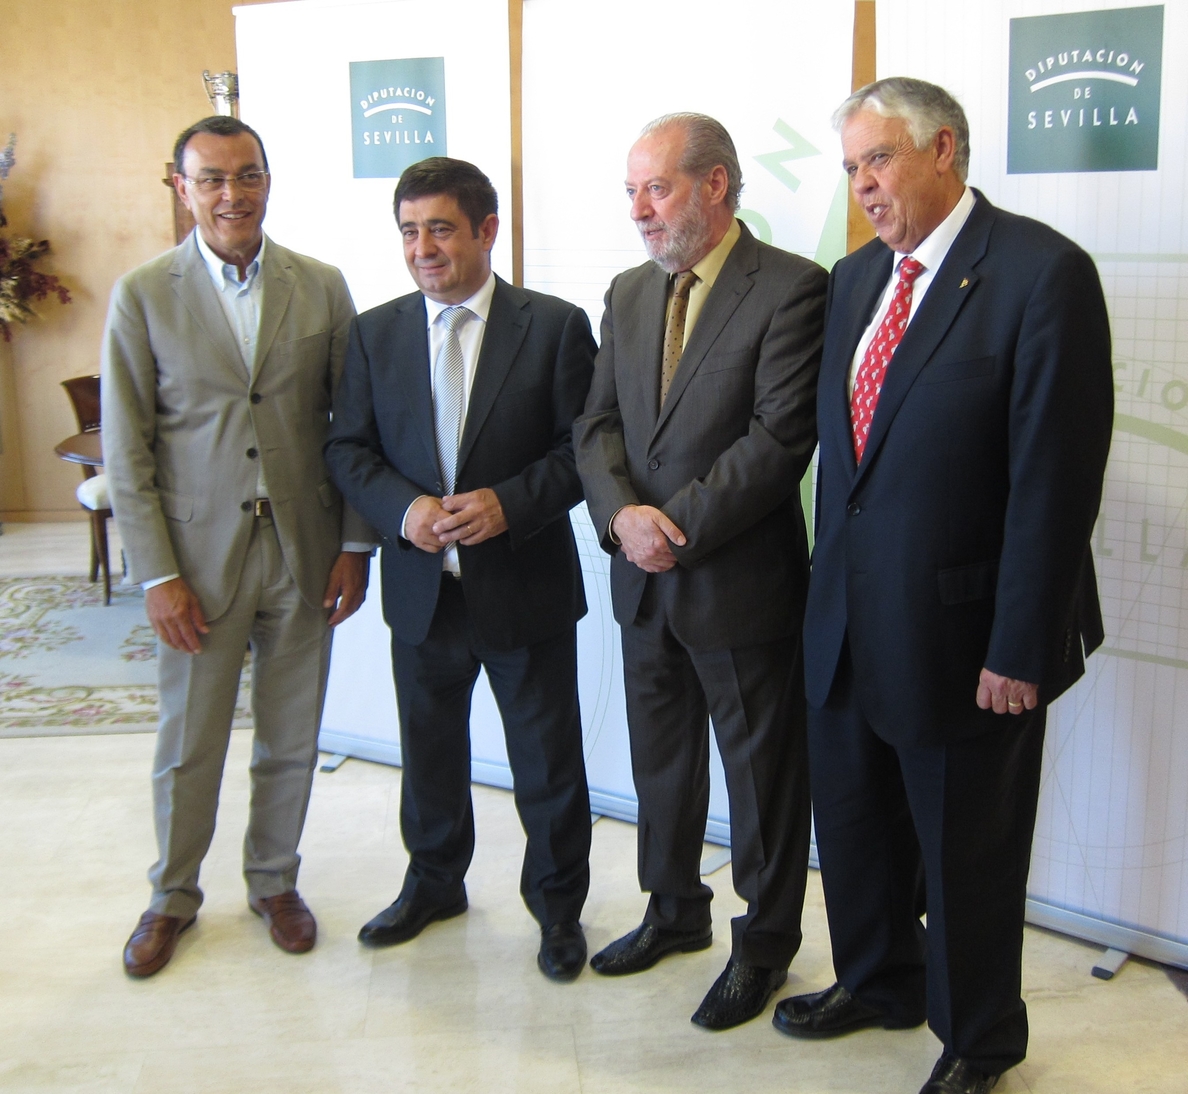 Las diputaciones de Sevilla, Huelva, Jaén y Badajoz se unen en defensa del mundo rural ante el nuevo marco del Feder